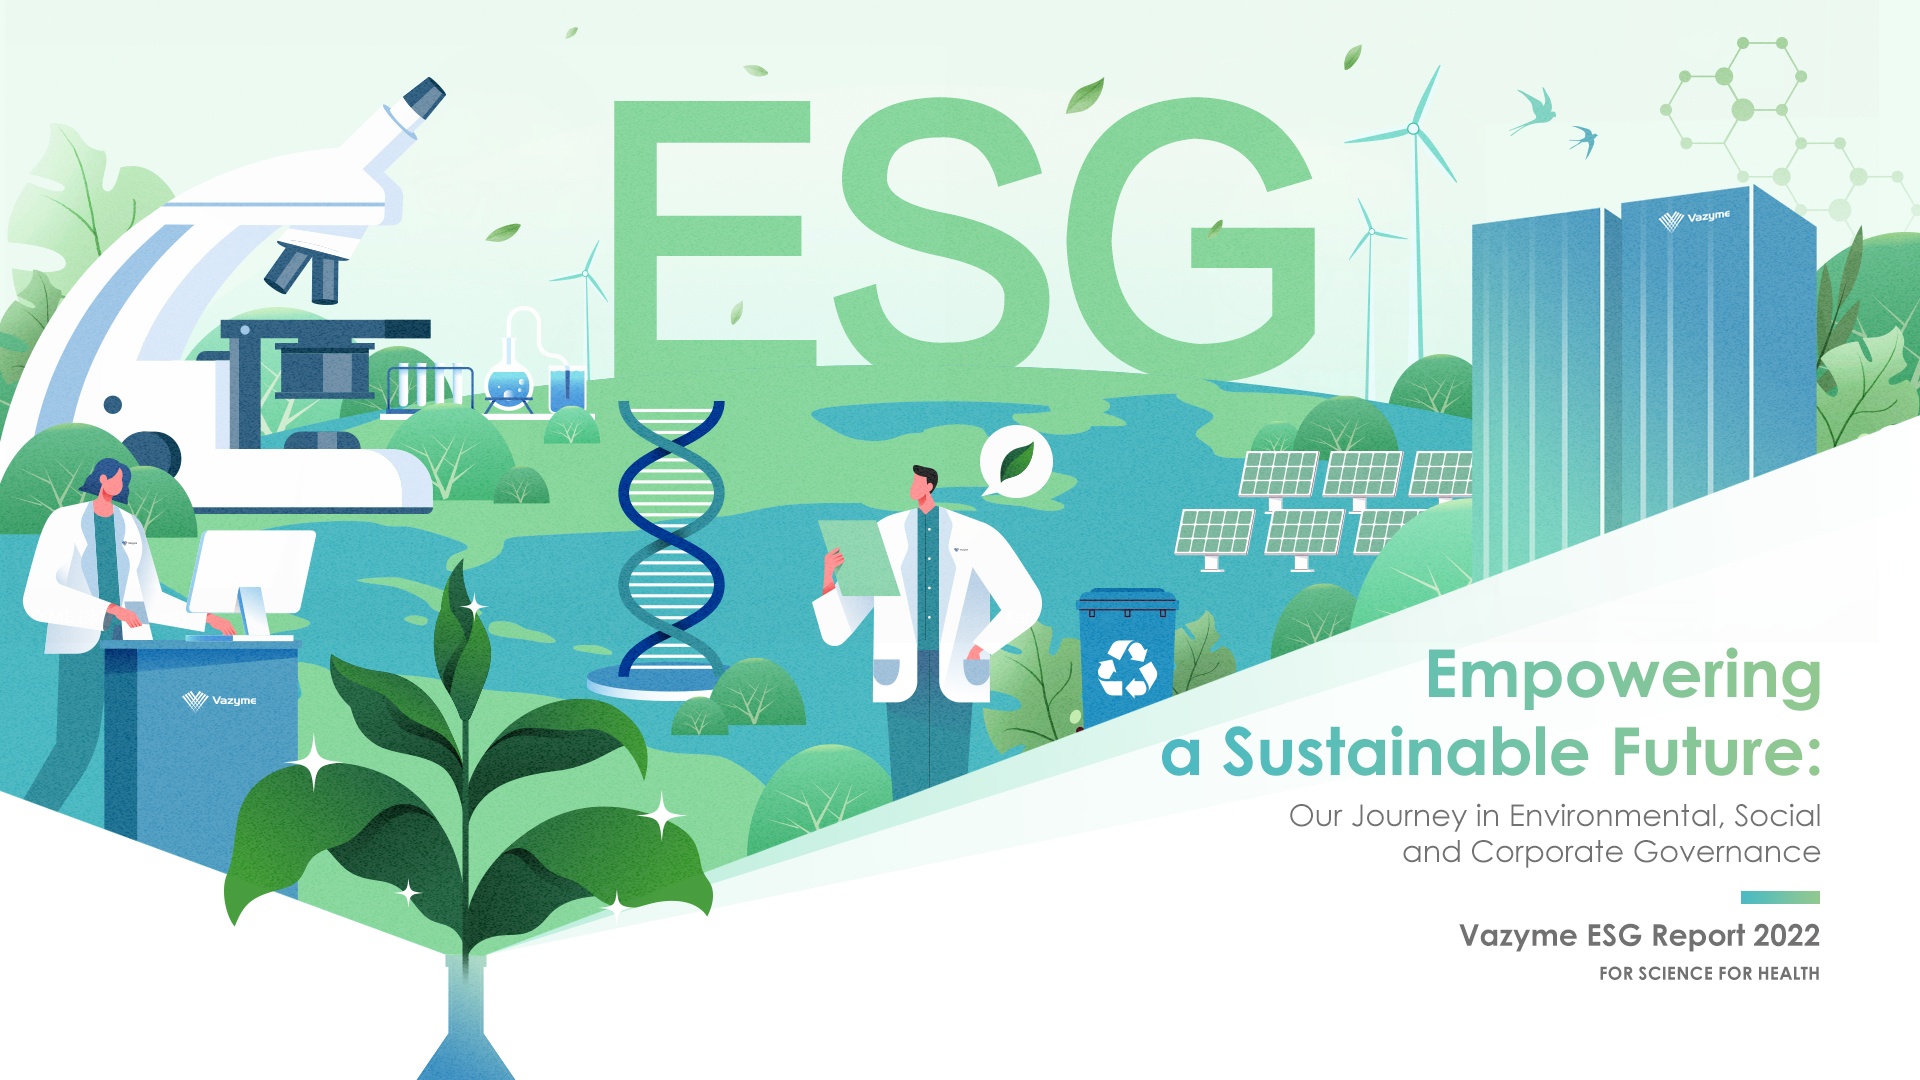 Vazyme издава доклад за ESG за 2022 г.: Овластяване на устойчиво бъдеще